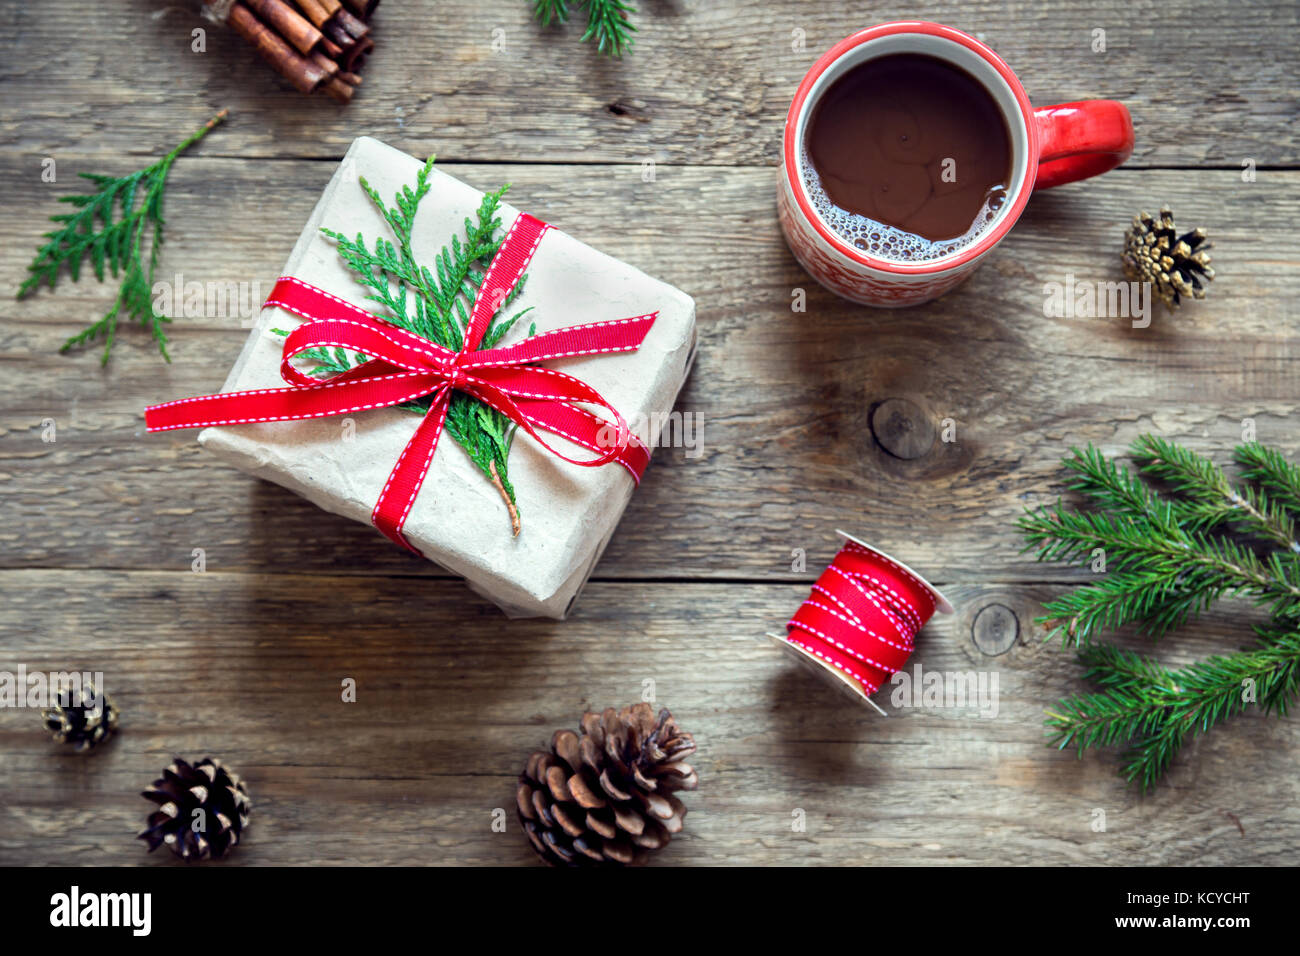 Tasse De Chocolat Chaud Et De Guimauve Sur Fond De Noël Avec Des Branches  De Sapin, Des Cônes Et Des Boules Sur Une Table En Bois Gris.